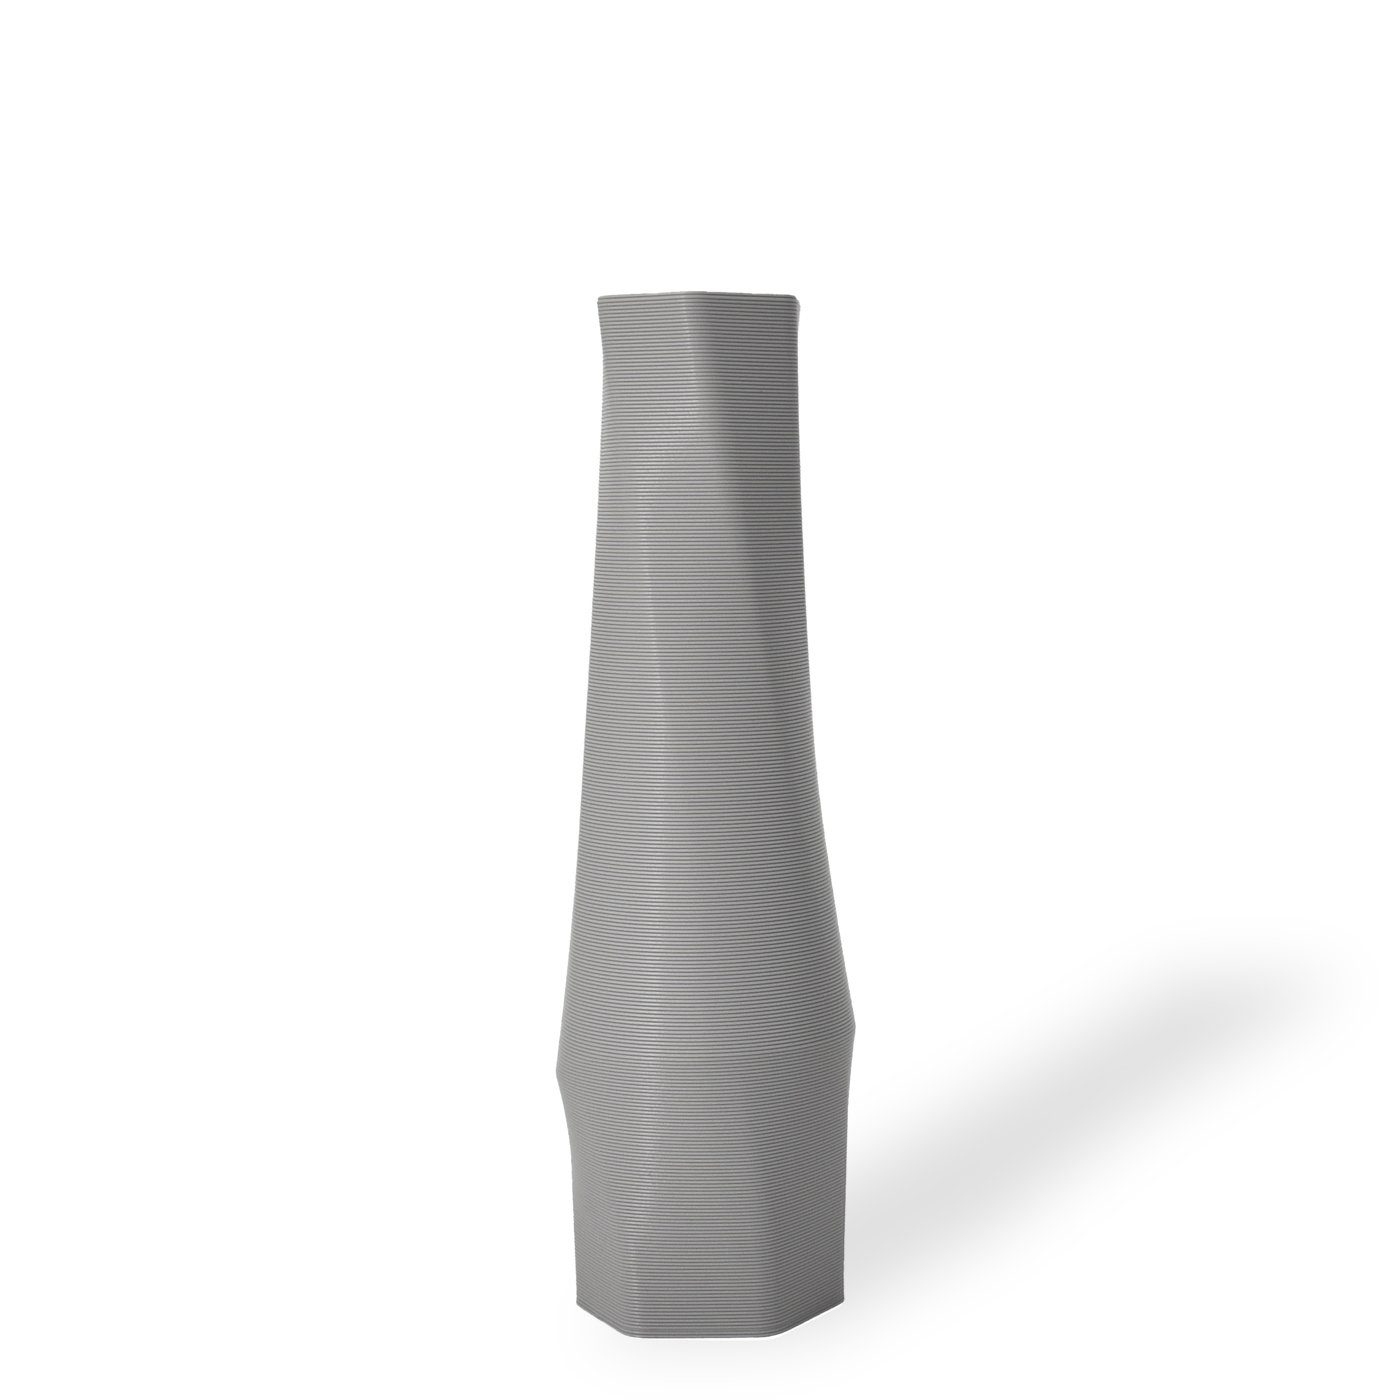 Shapes - Decorations Dekovase the vase - hexagon (basic), 3D Vasen, viele Farben, 100% 3D-Druck (Einzelmodell, 1 Vase), Wasserdicht; Leichte Struktur innerhalb des Materials (Rillung) Hellgrau